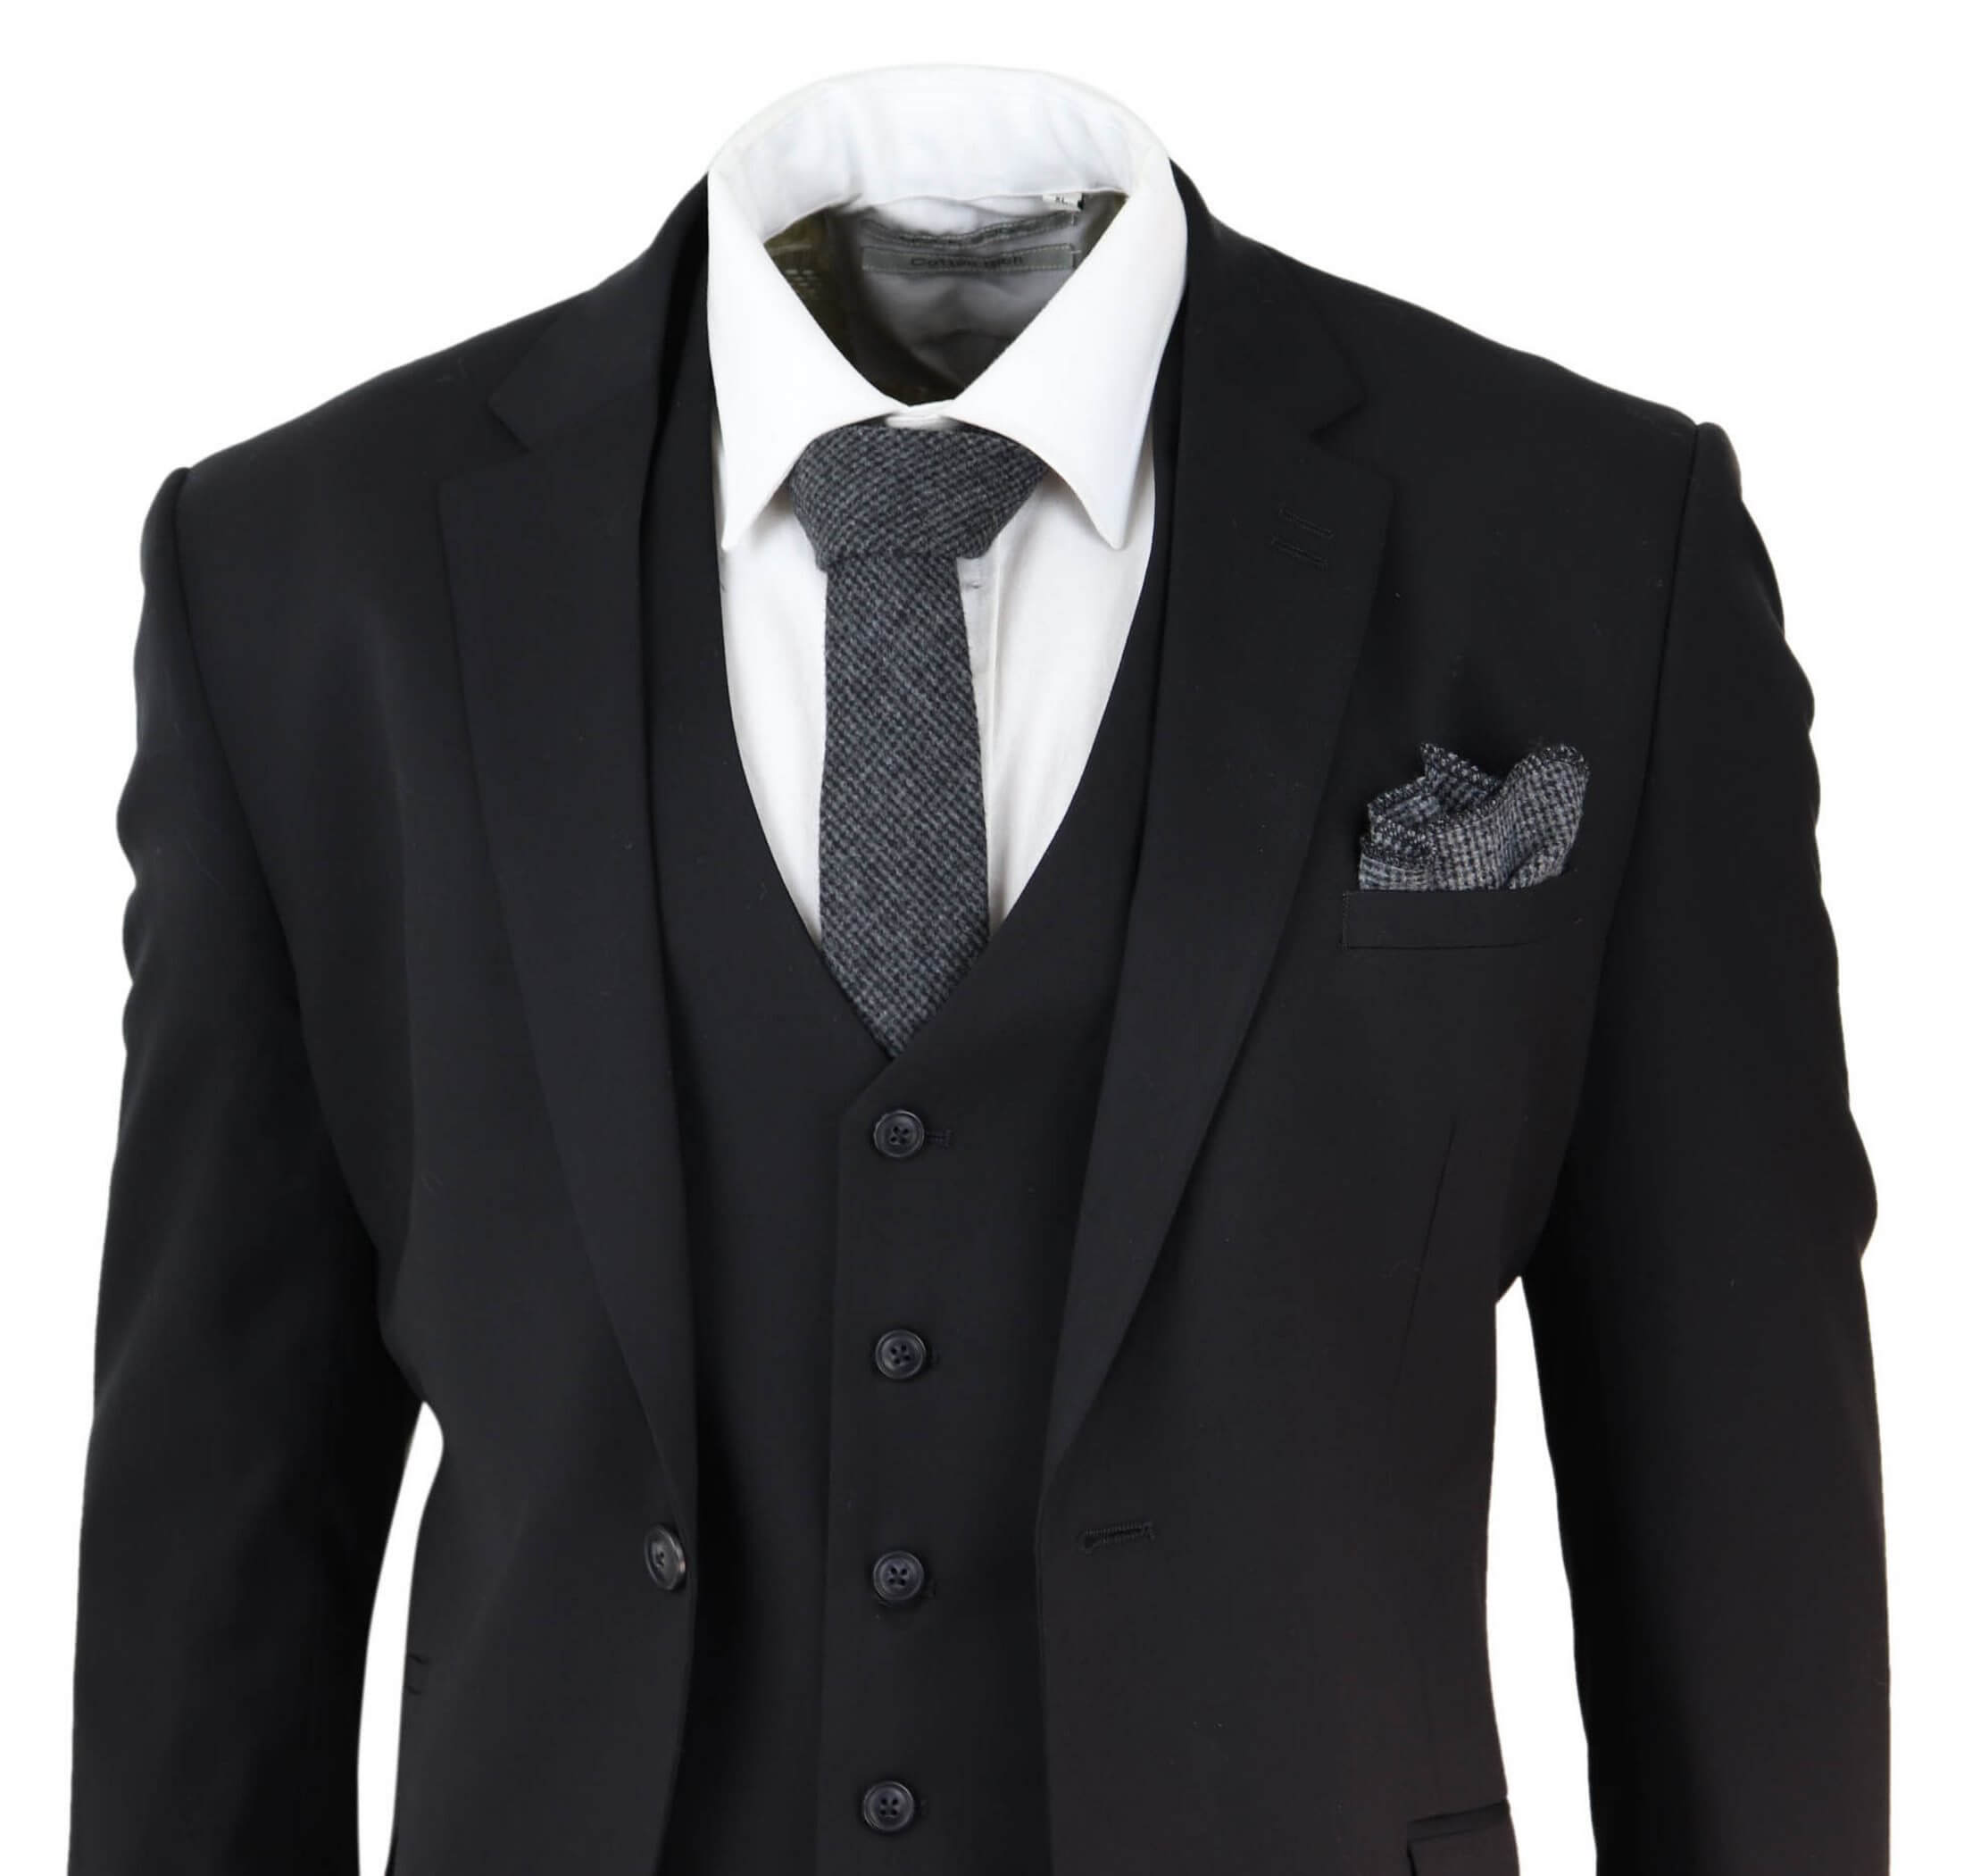 Mens Black 3 Piece Suit: Buy Online - Happy Gentleman